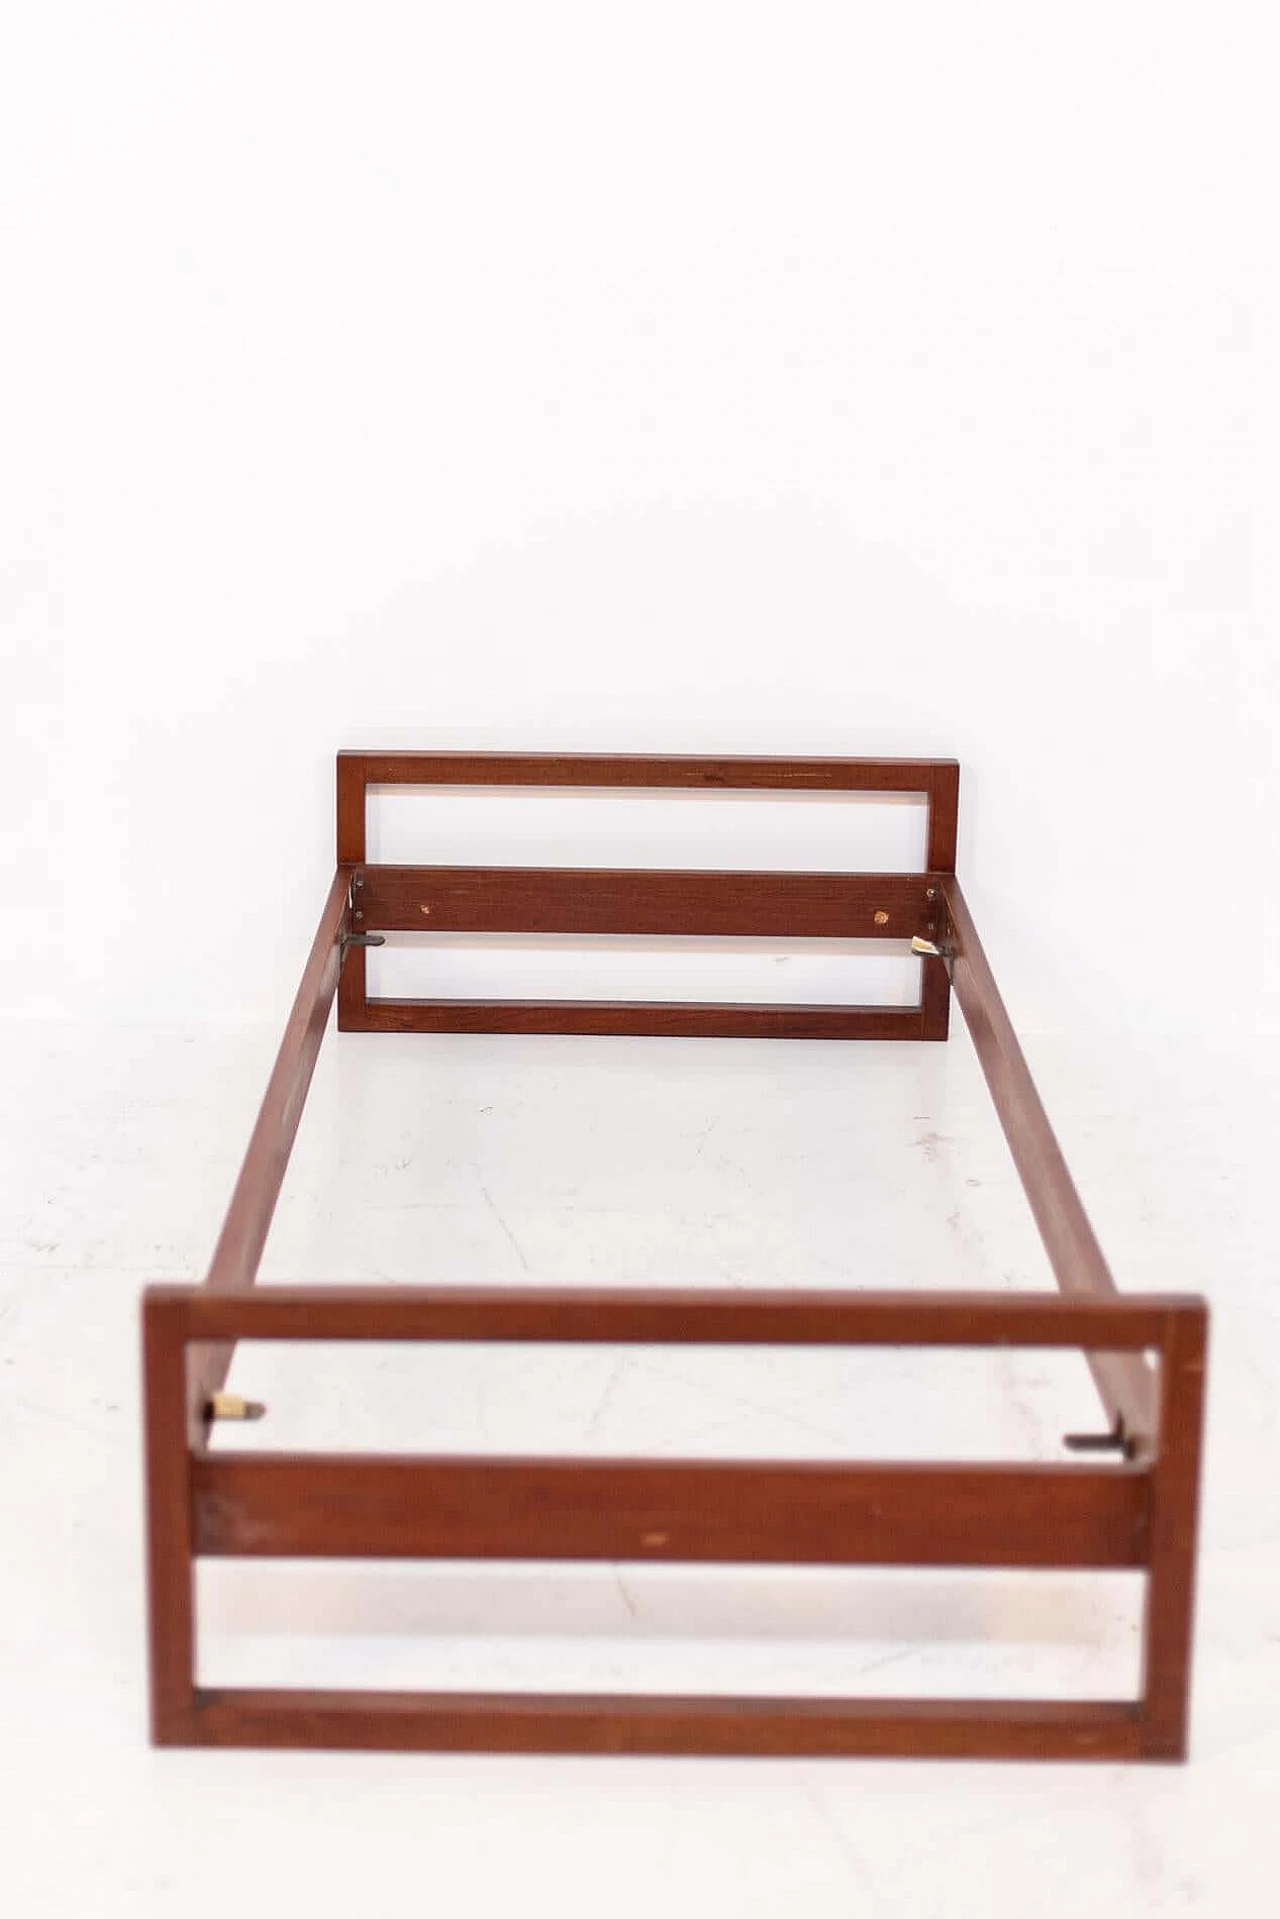 Gianfranco Frattini walnut single bed, 1950s 1405385